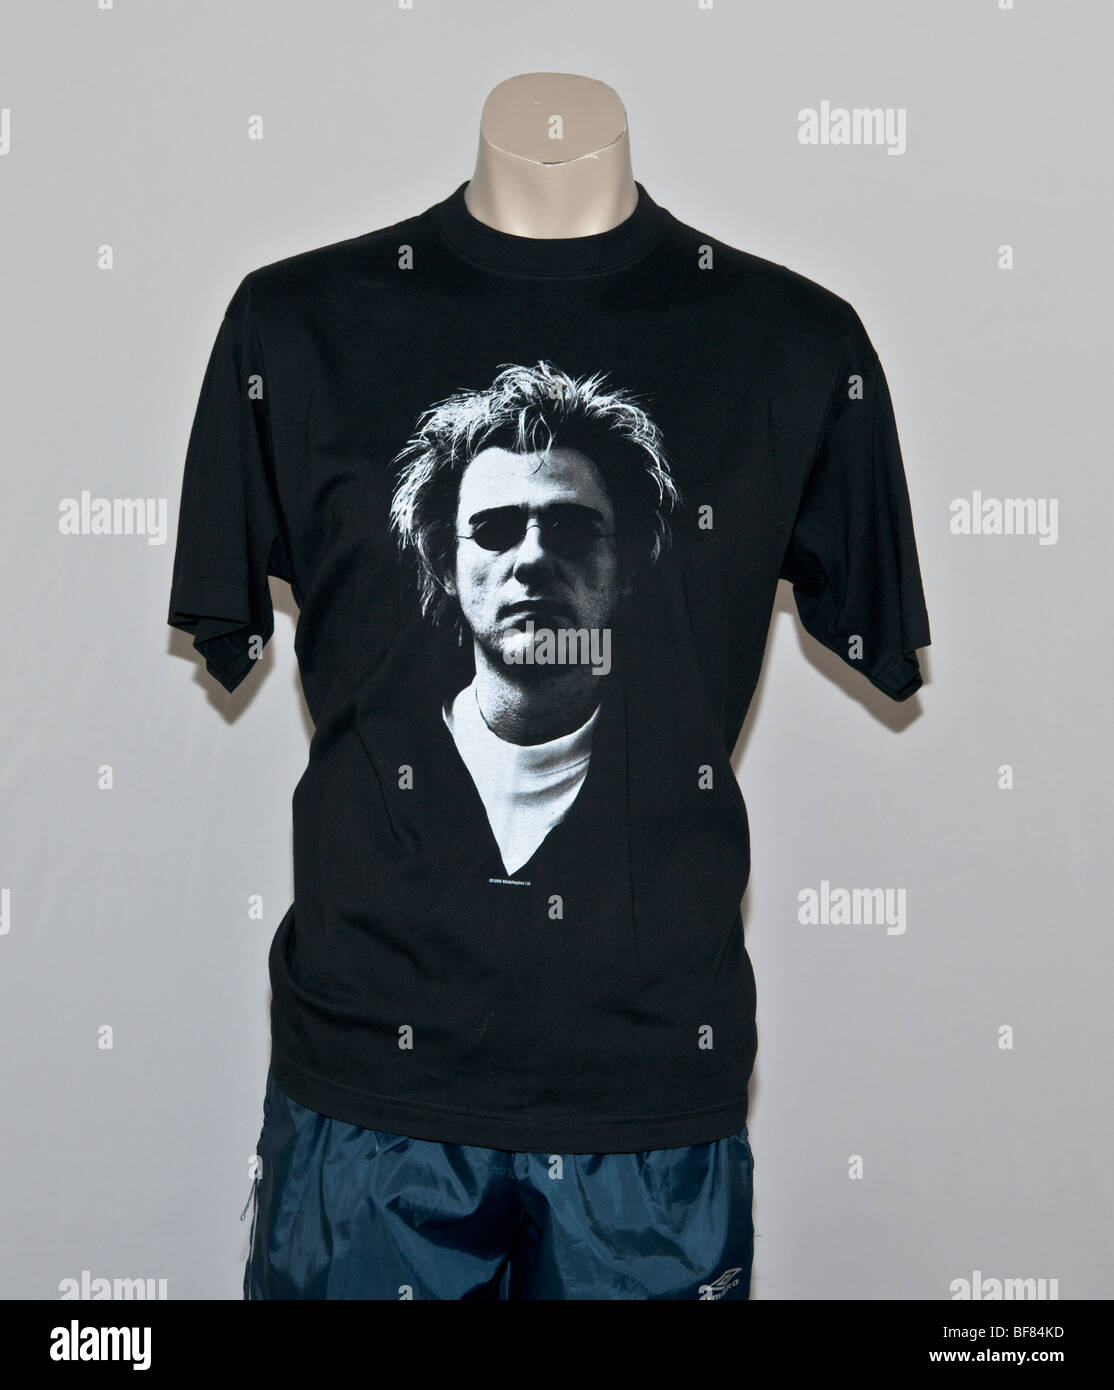 T-Shirt mit einem schwarz-weißen Porträt von Chris Lowe Lead von Pet Shop Boys, einer englischen Popgruppe. Nightlife-Album Stockfoto